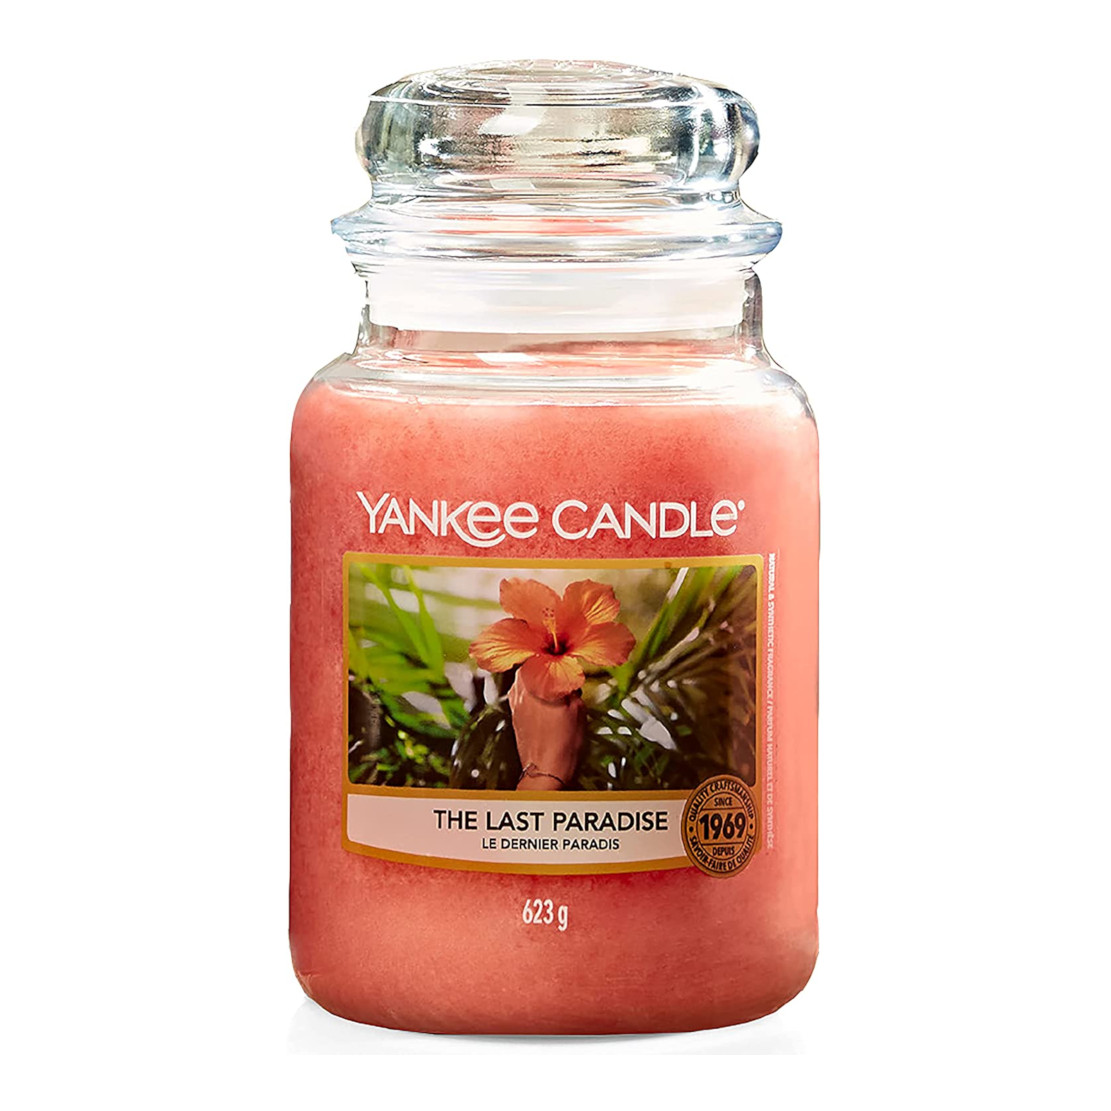 Yankee Candle The Last Paradise Large Jar